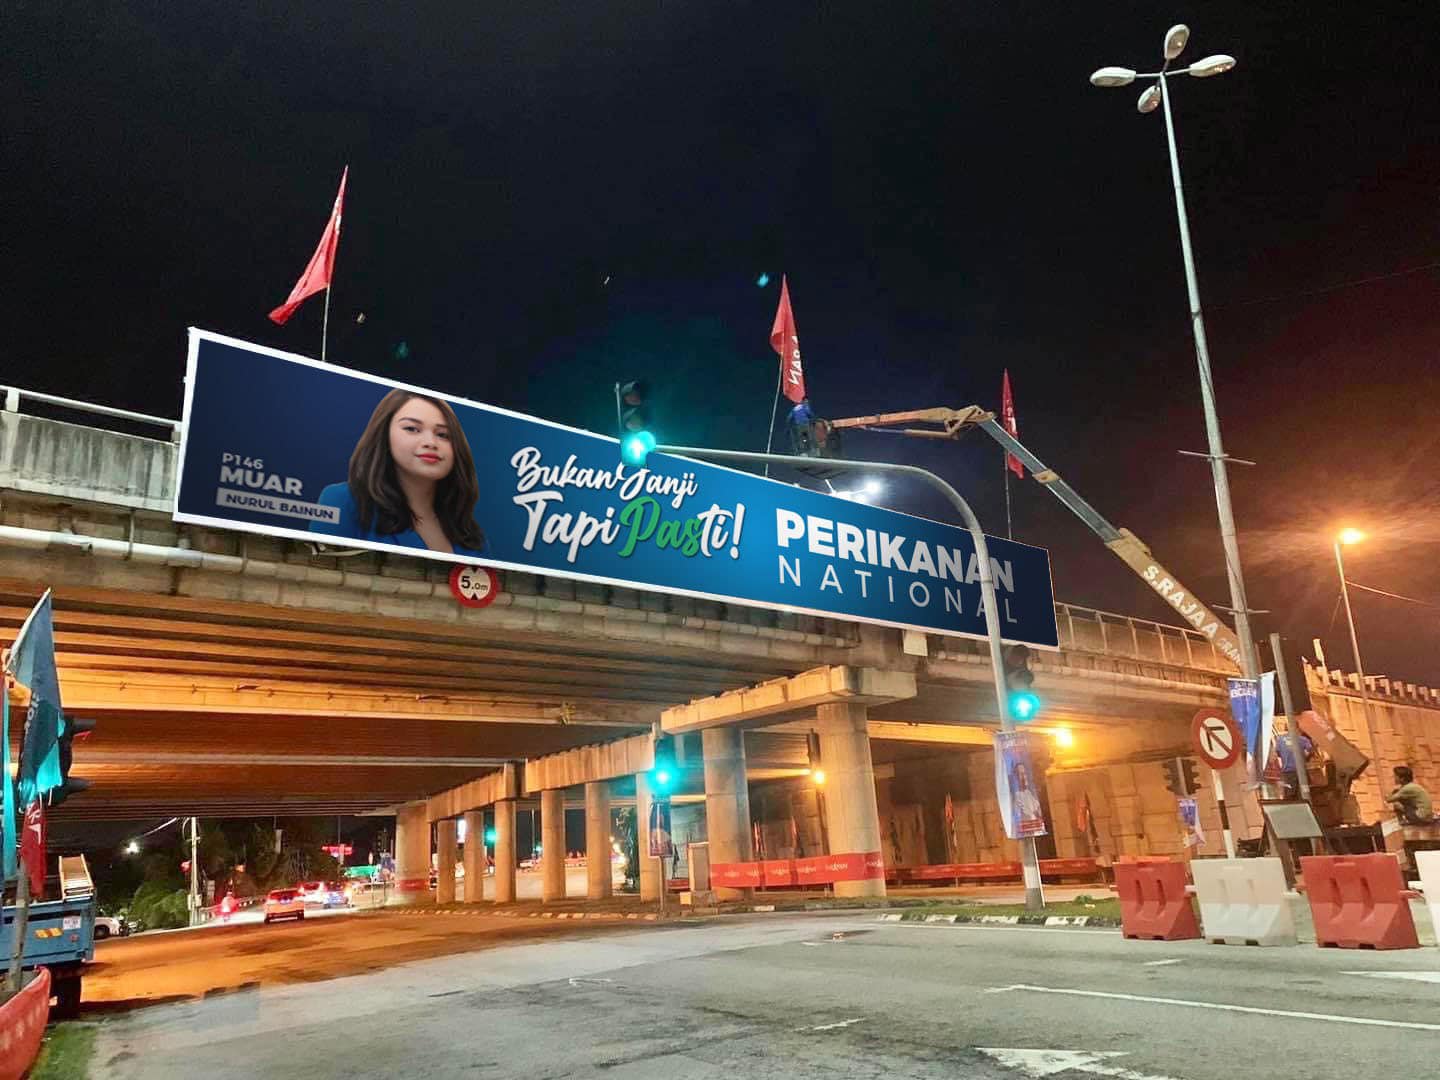 女网红巧妙地把Perikatan改为Perikanan，并宣称本身为麻坡国席候选人，成功引起热议。